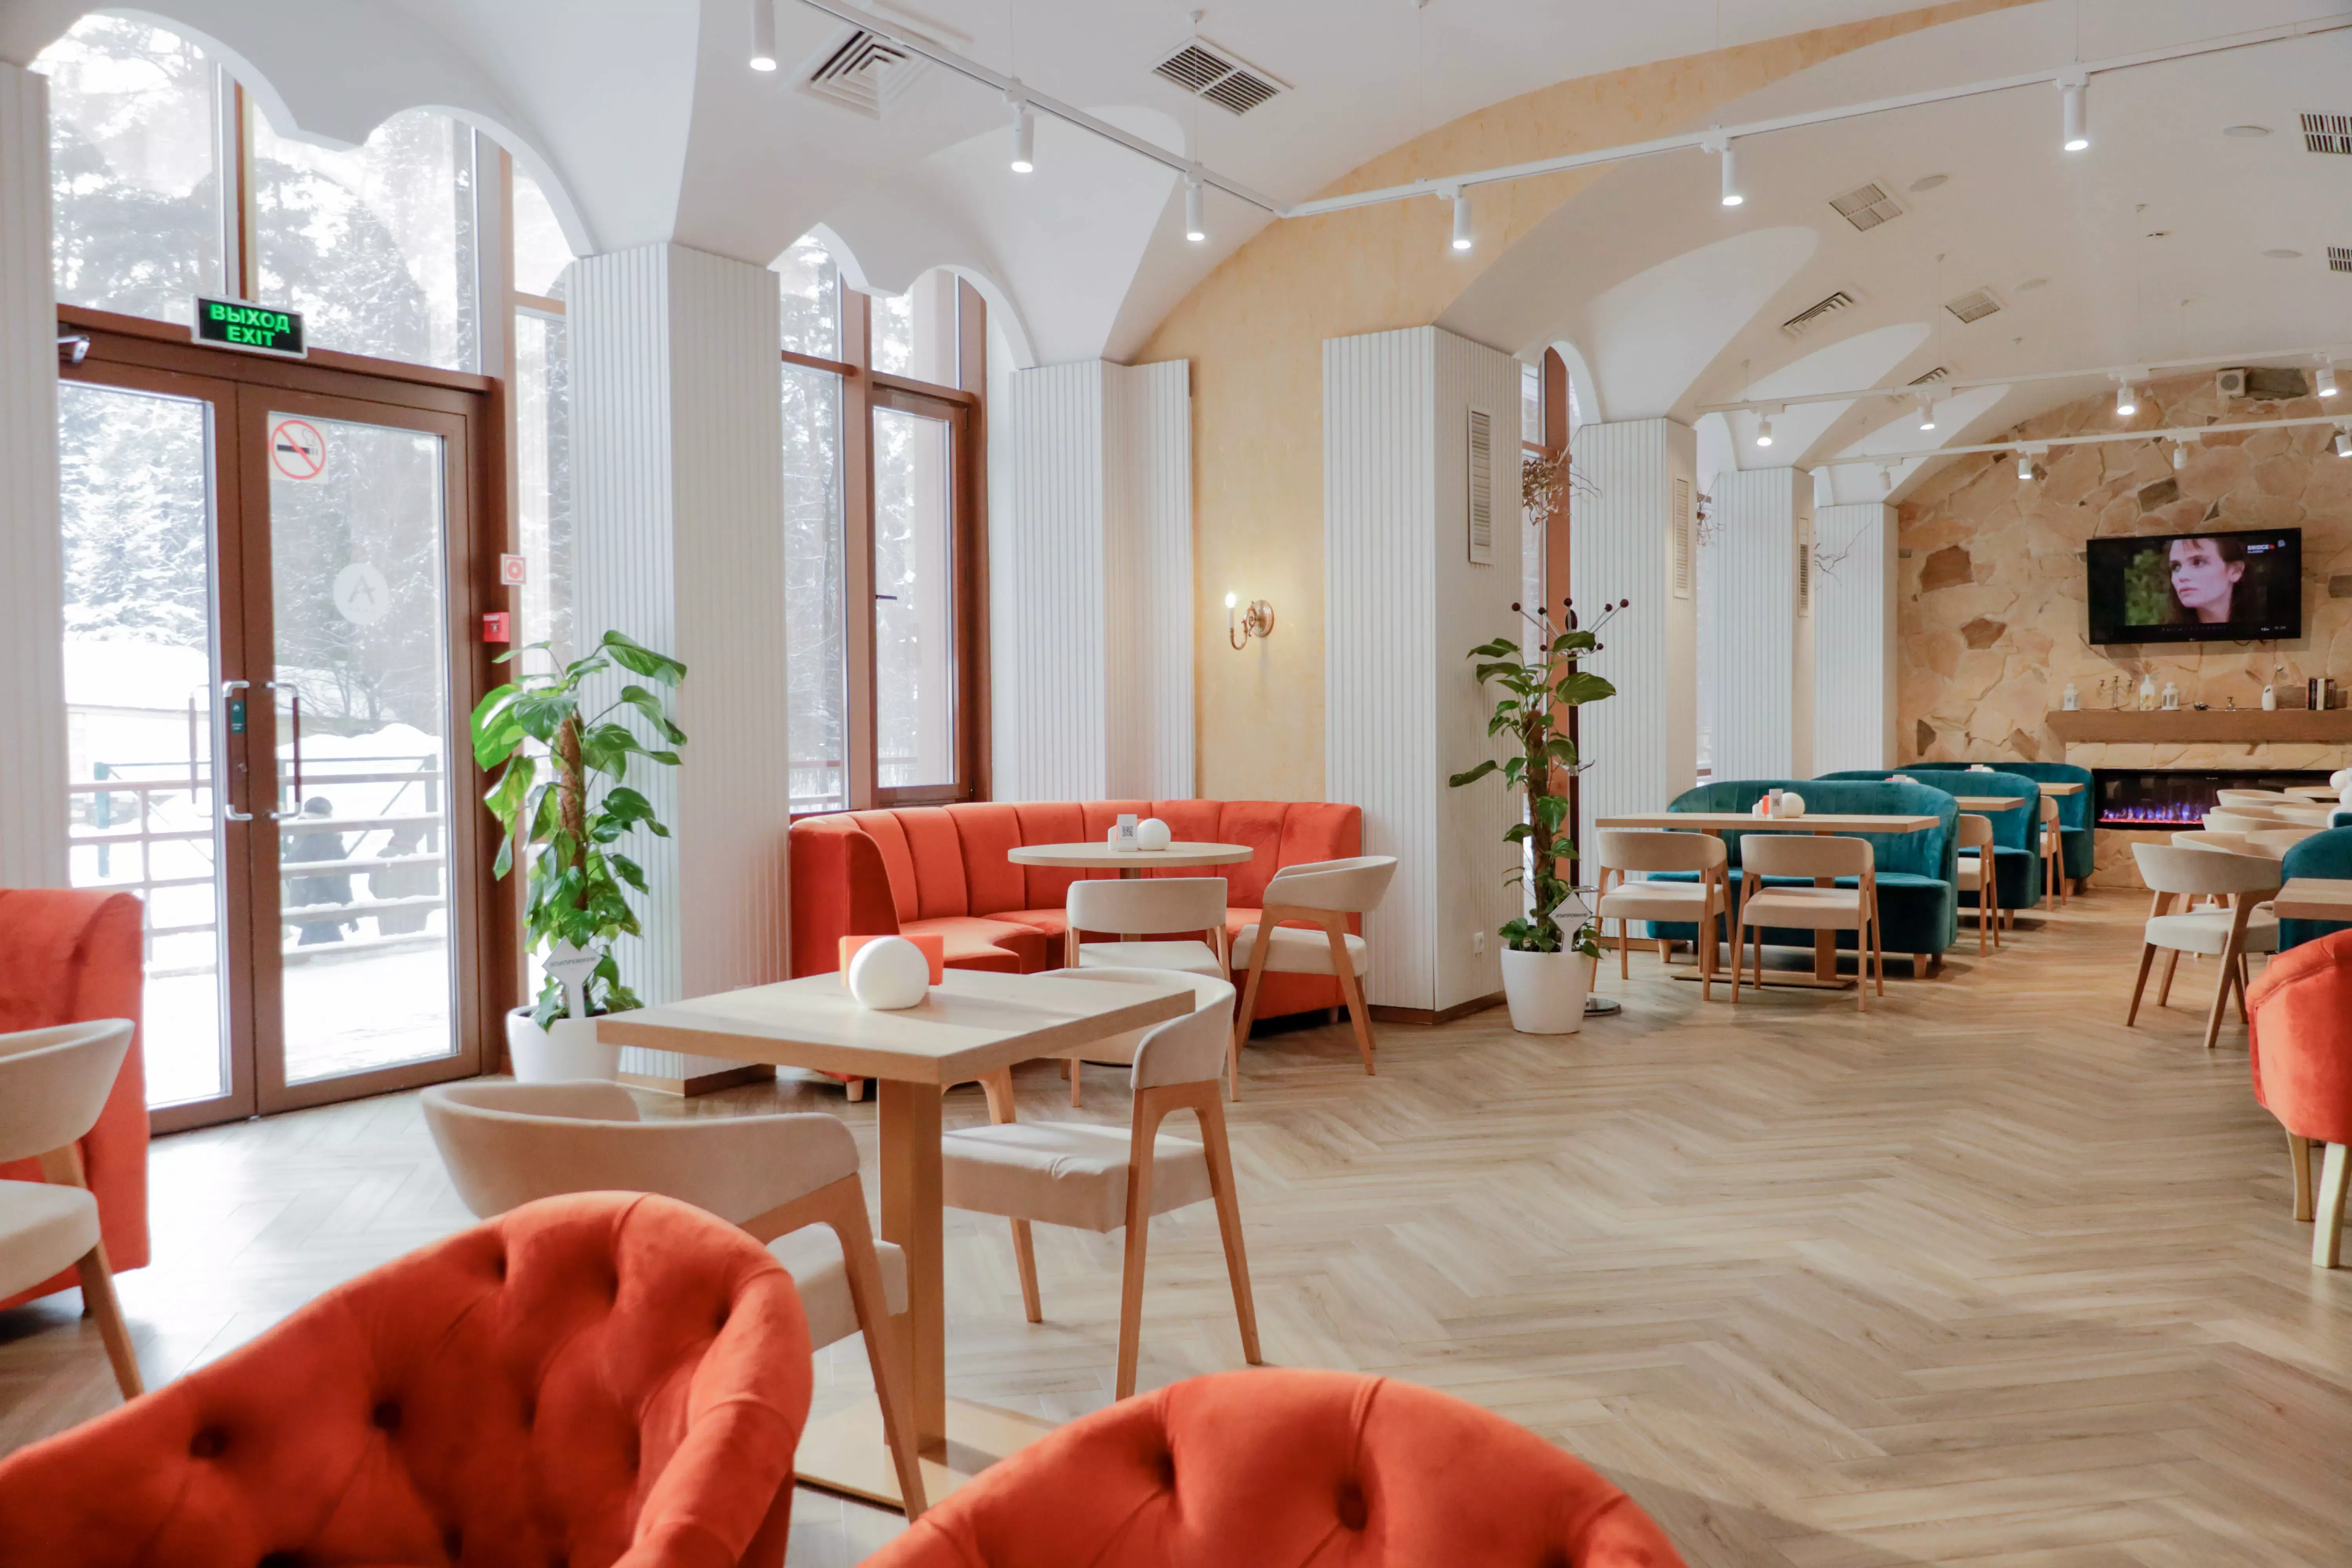 Дизайн интерьера кафе: как привлекать гостей и создавать уютную атмосферу